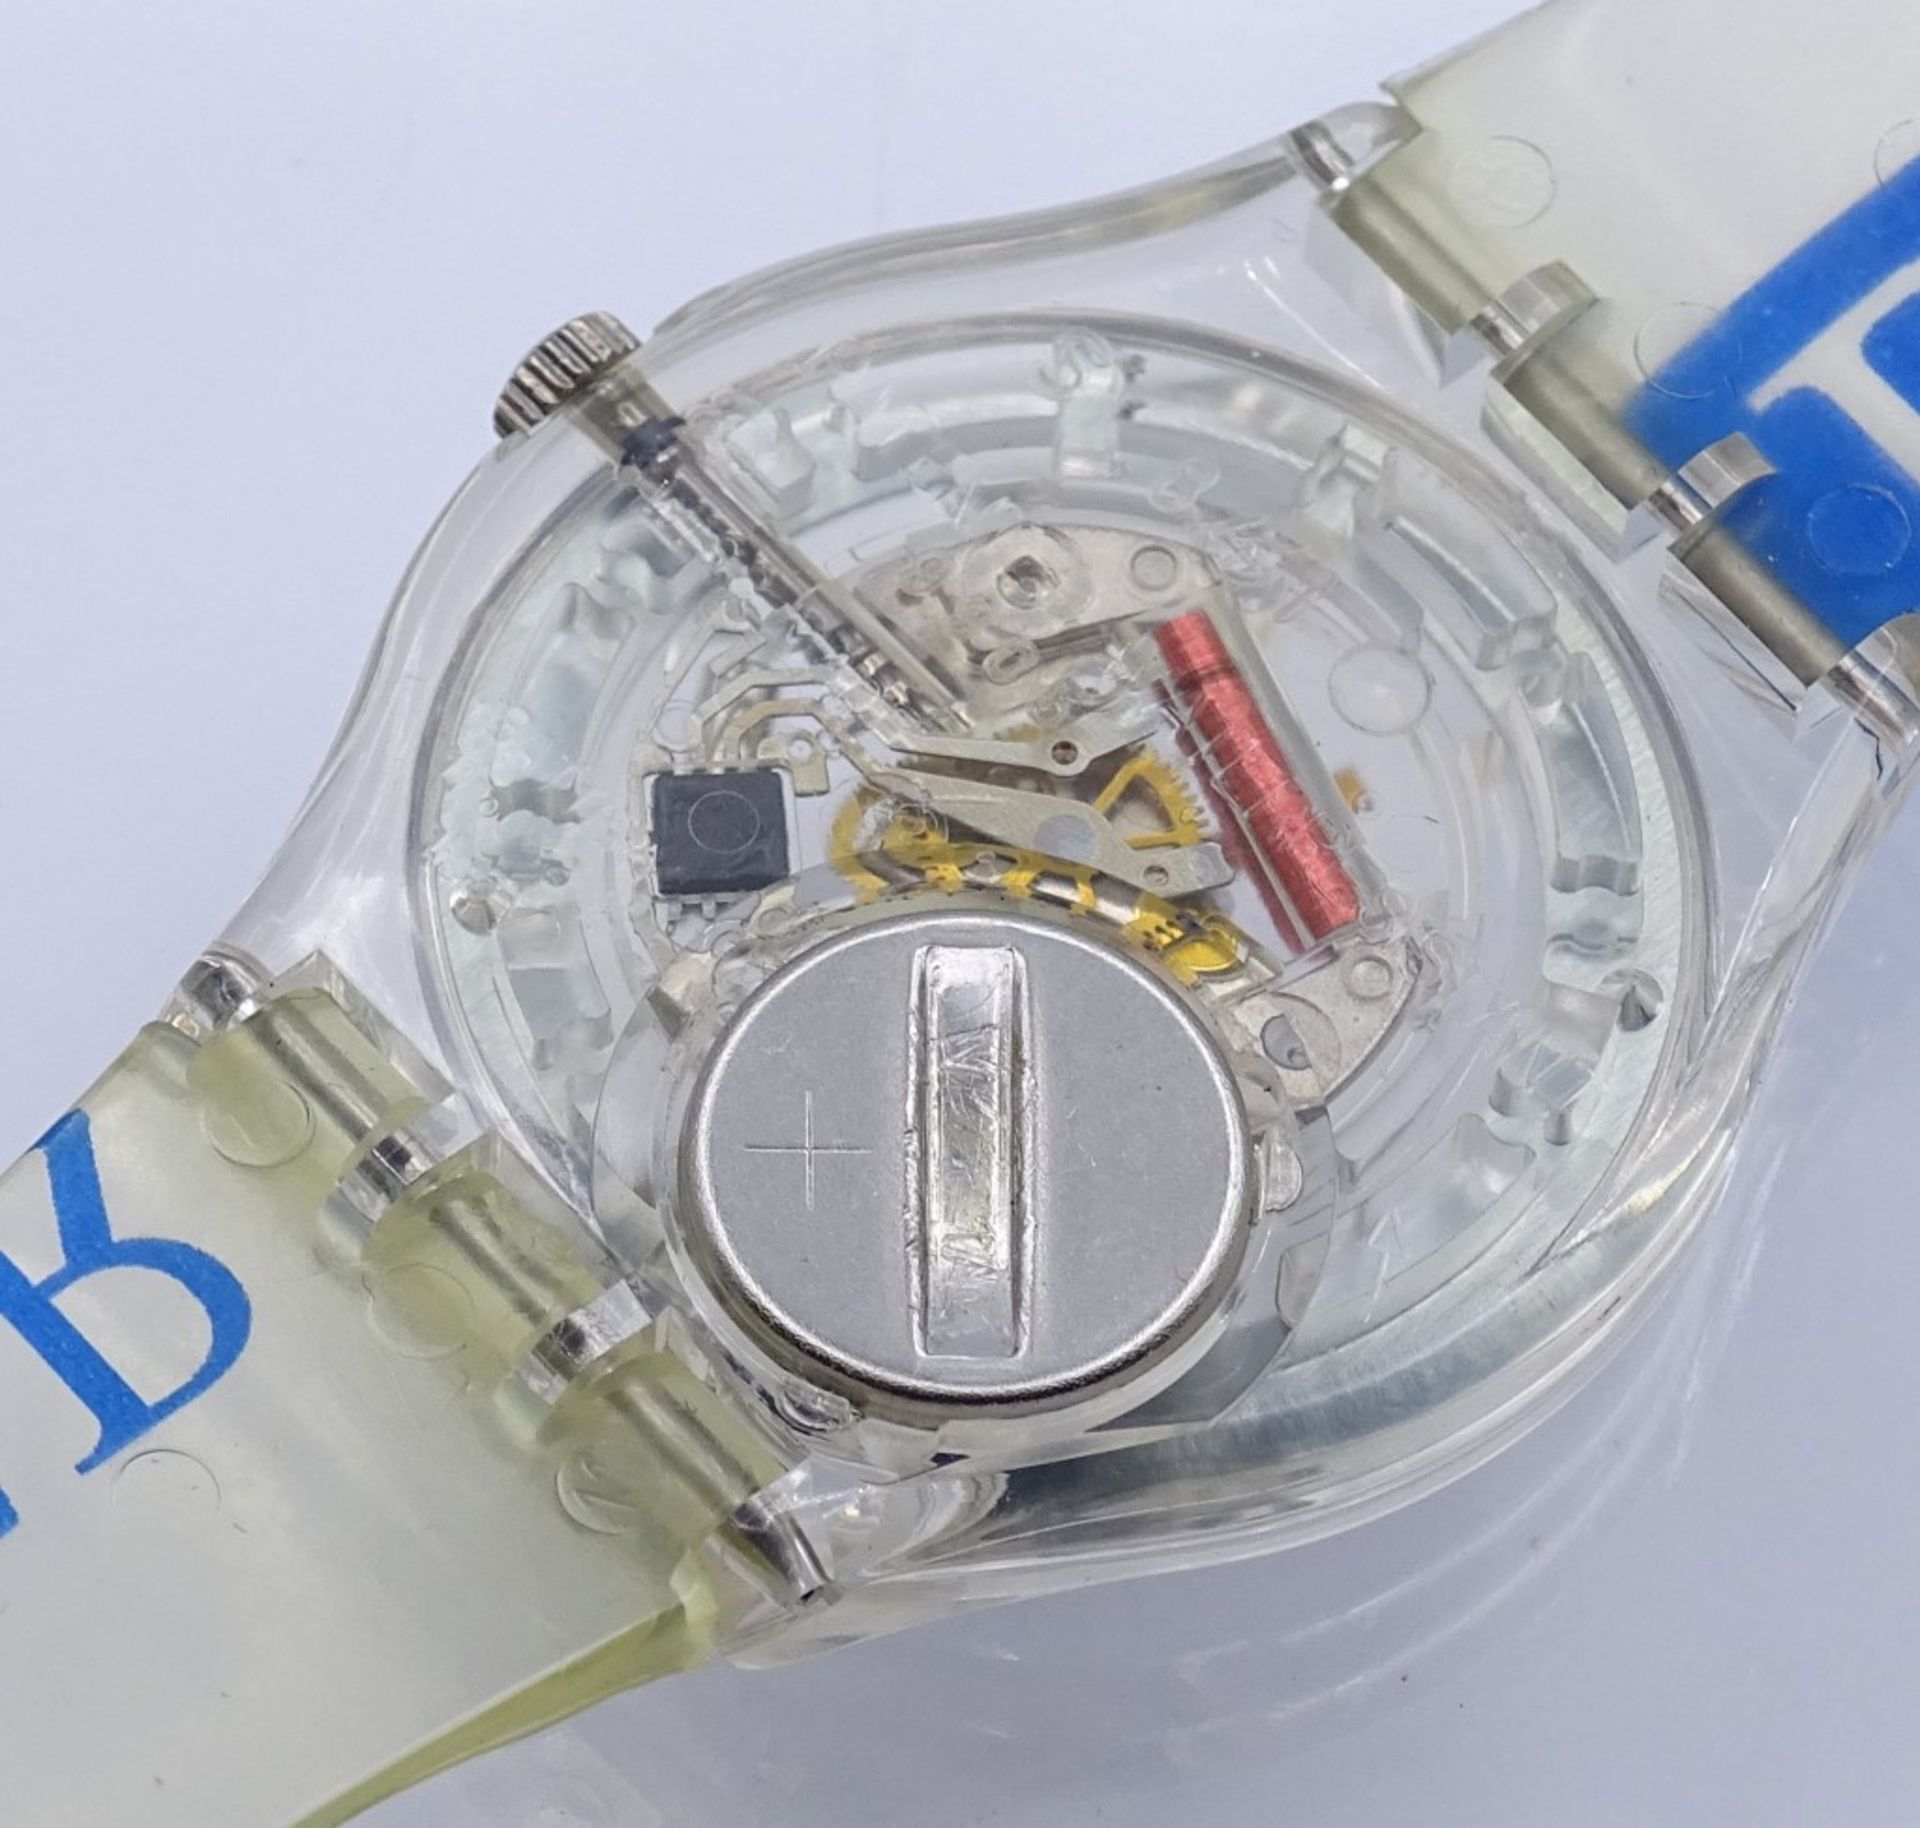 Armbanduhr "Swatch",1990, Quartz,OVP,Funktion nicht überprü- - -22.61 % buyer's premium on the - Bild 2 aus 4